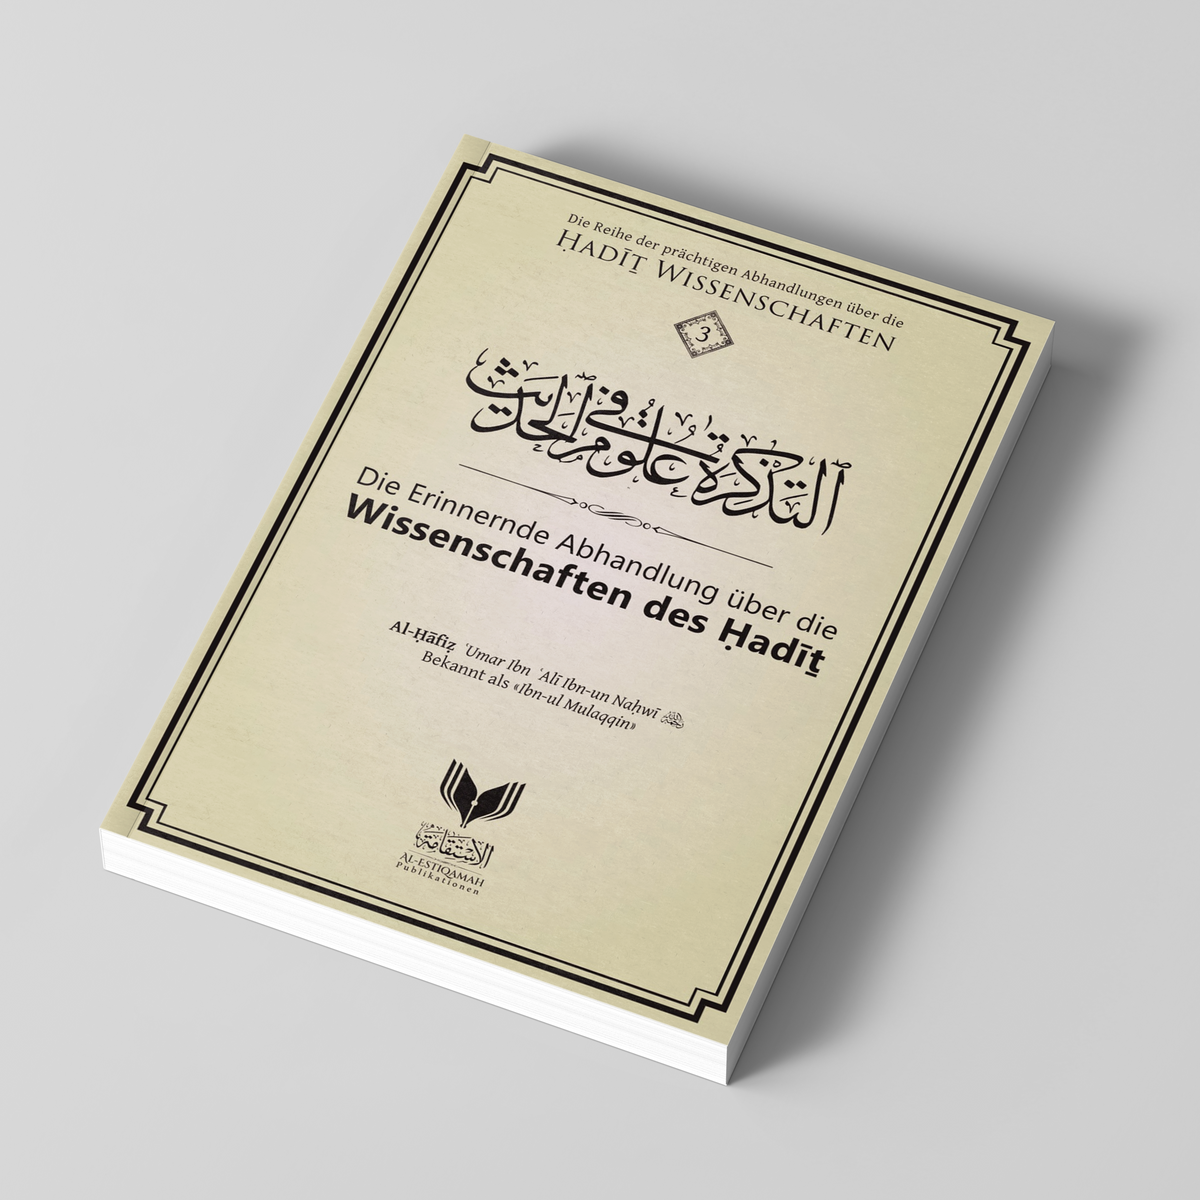 Le Traité de mémorisation sur les sciences de Hadit